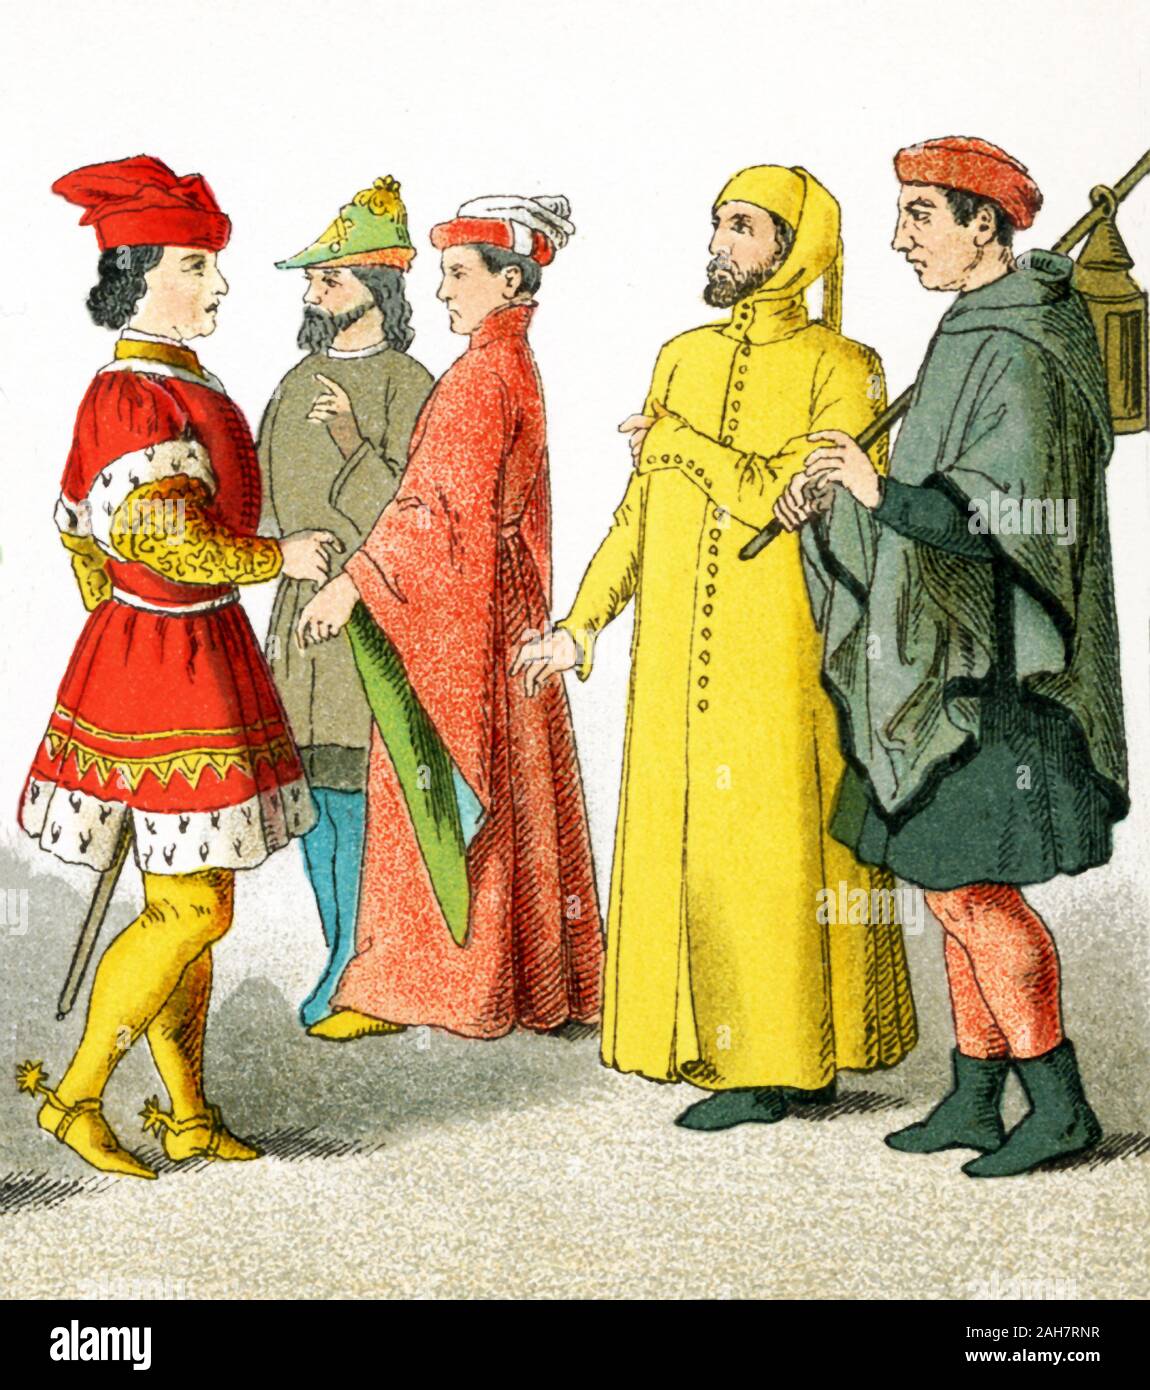 Le figure in questa immagine sono italiani dall'A.D. 1300s. Essi rappresentano, da sinistra a destra: tre uomini di rango, un cittadino e un contadino. L'illustrazione risale al 1882. Foto Stock